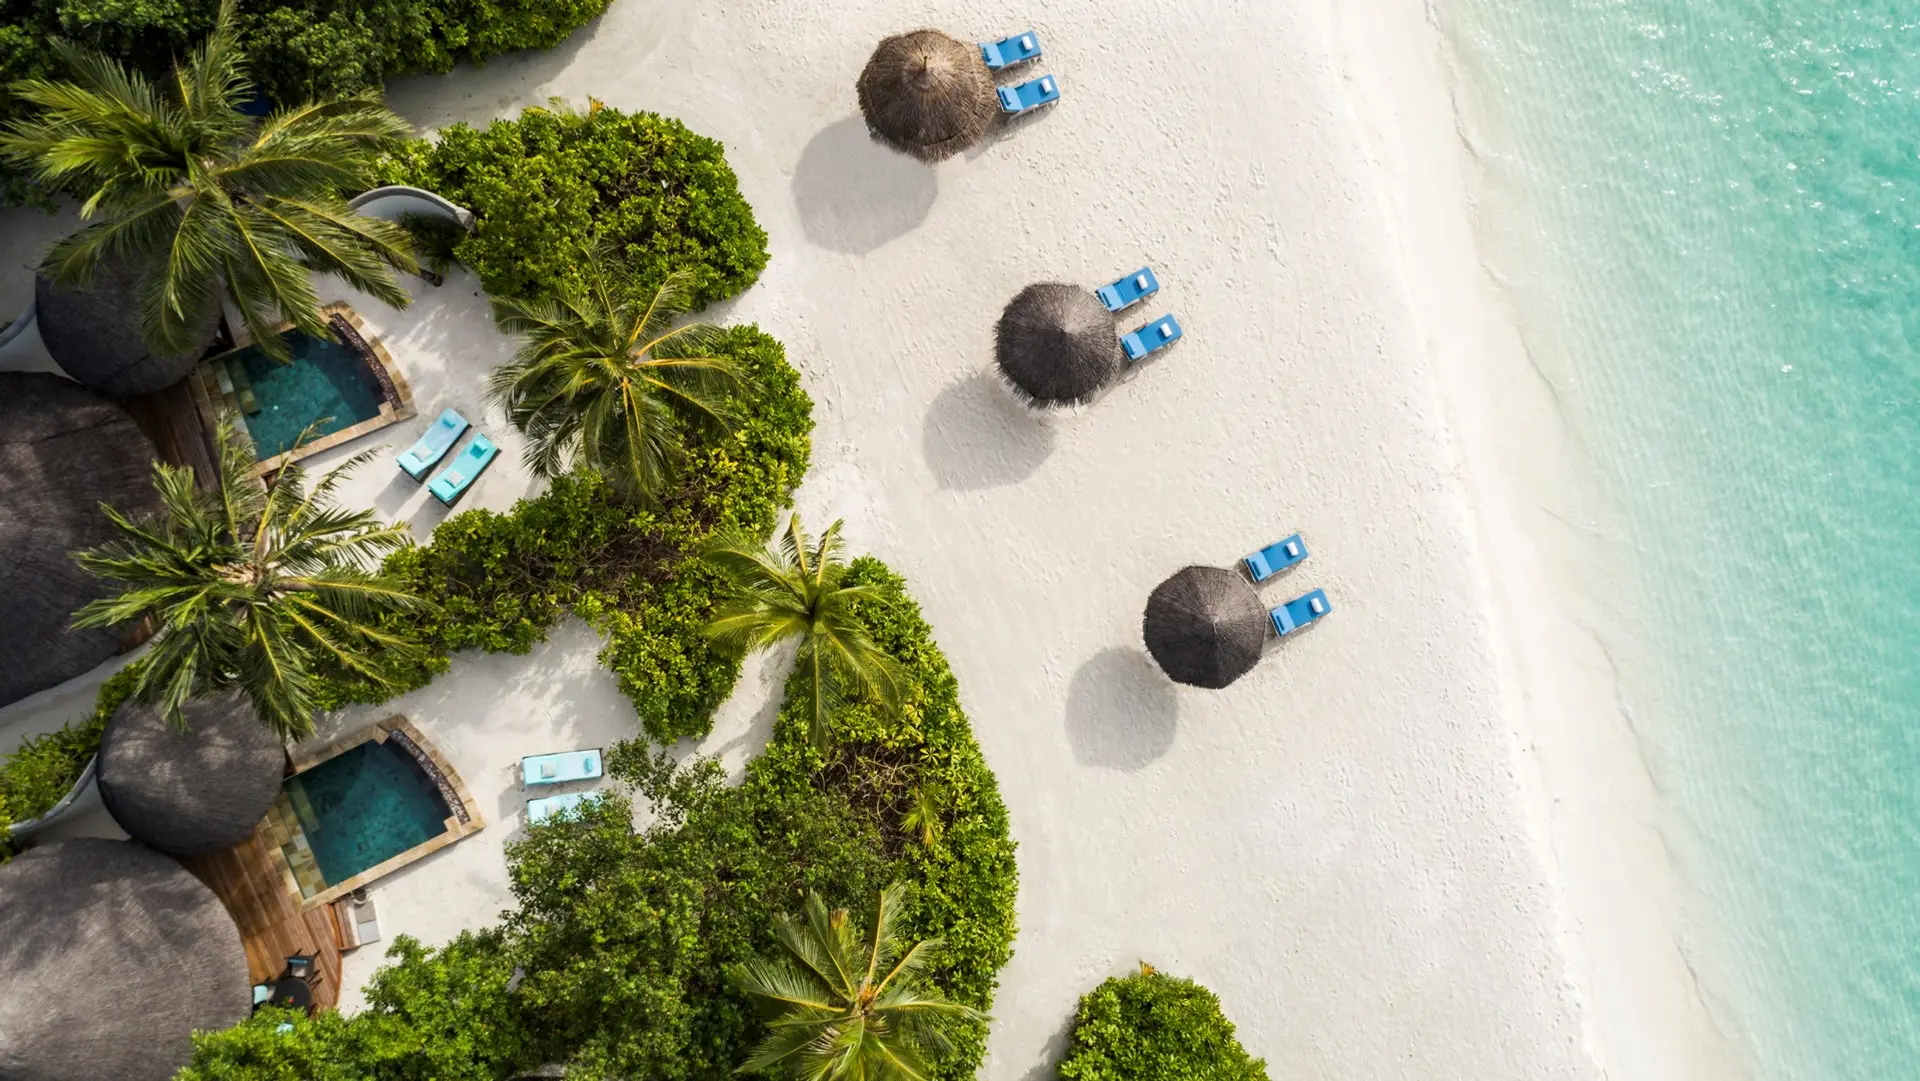 Hotel review Location' - Four Seasons Resort Maldives at Kuda Huraa - 2